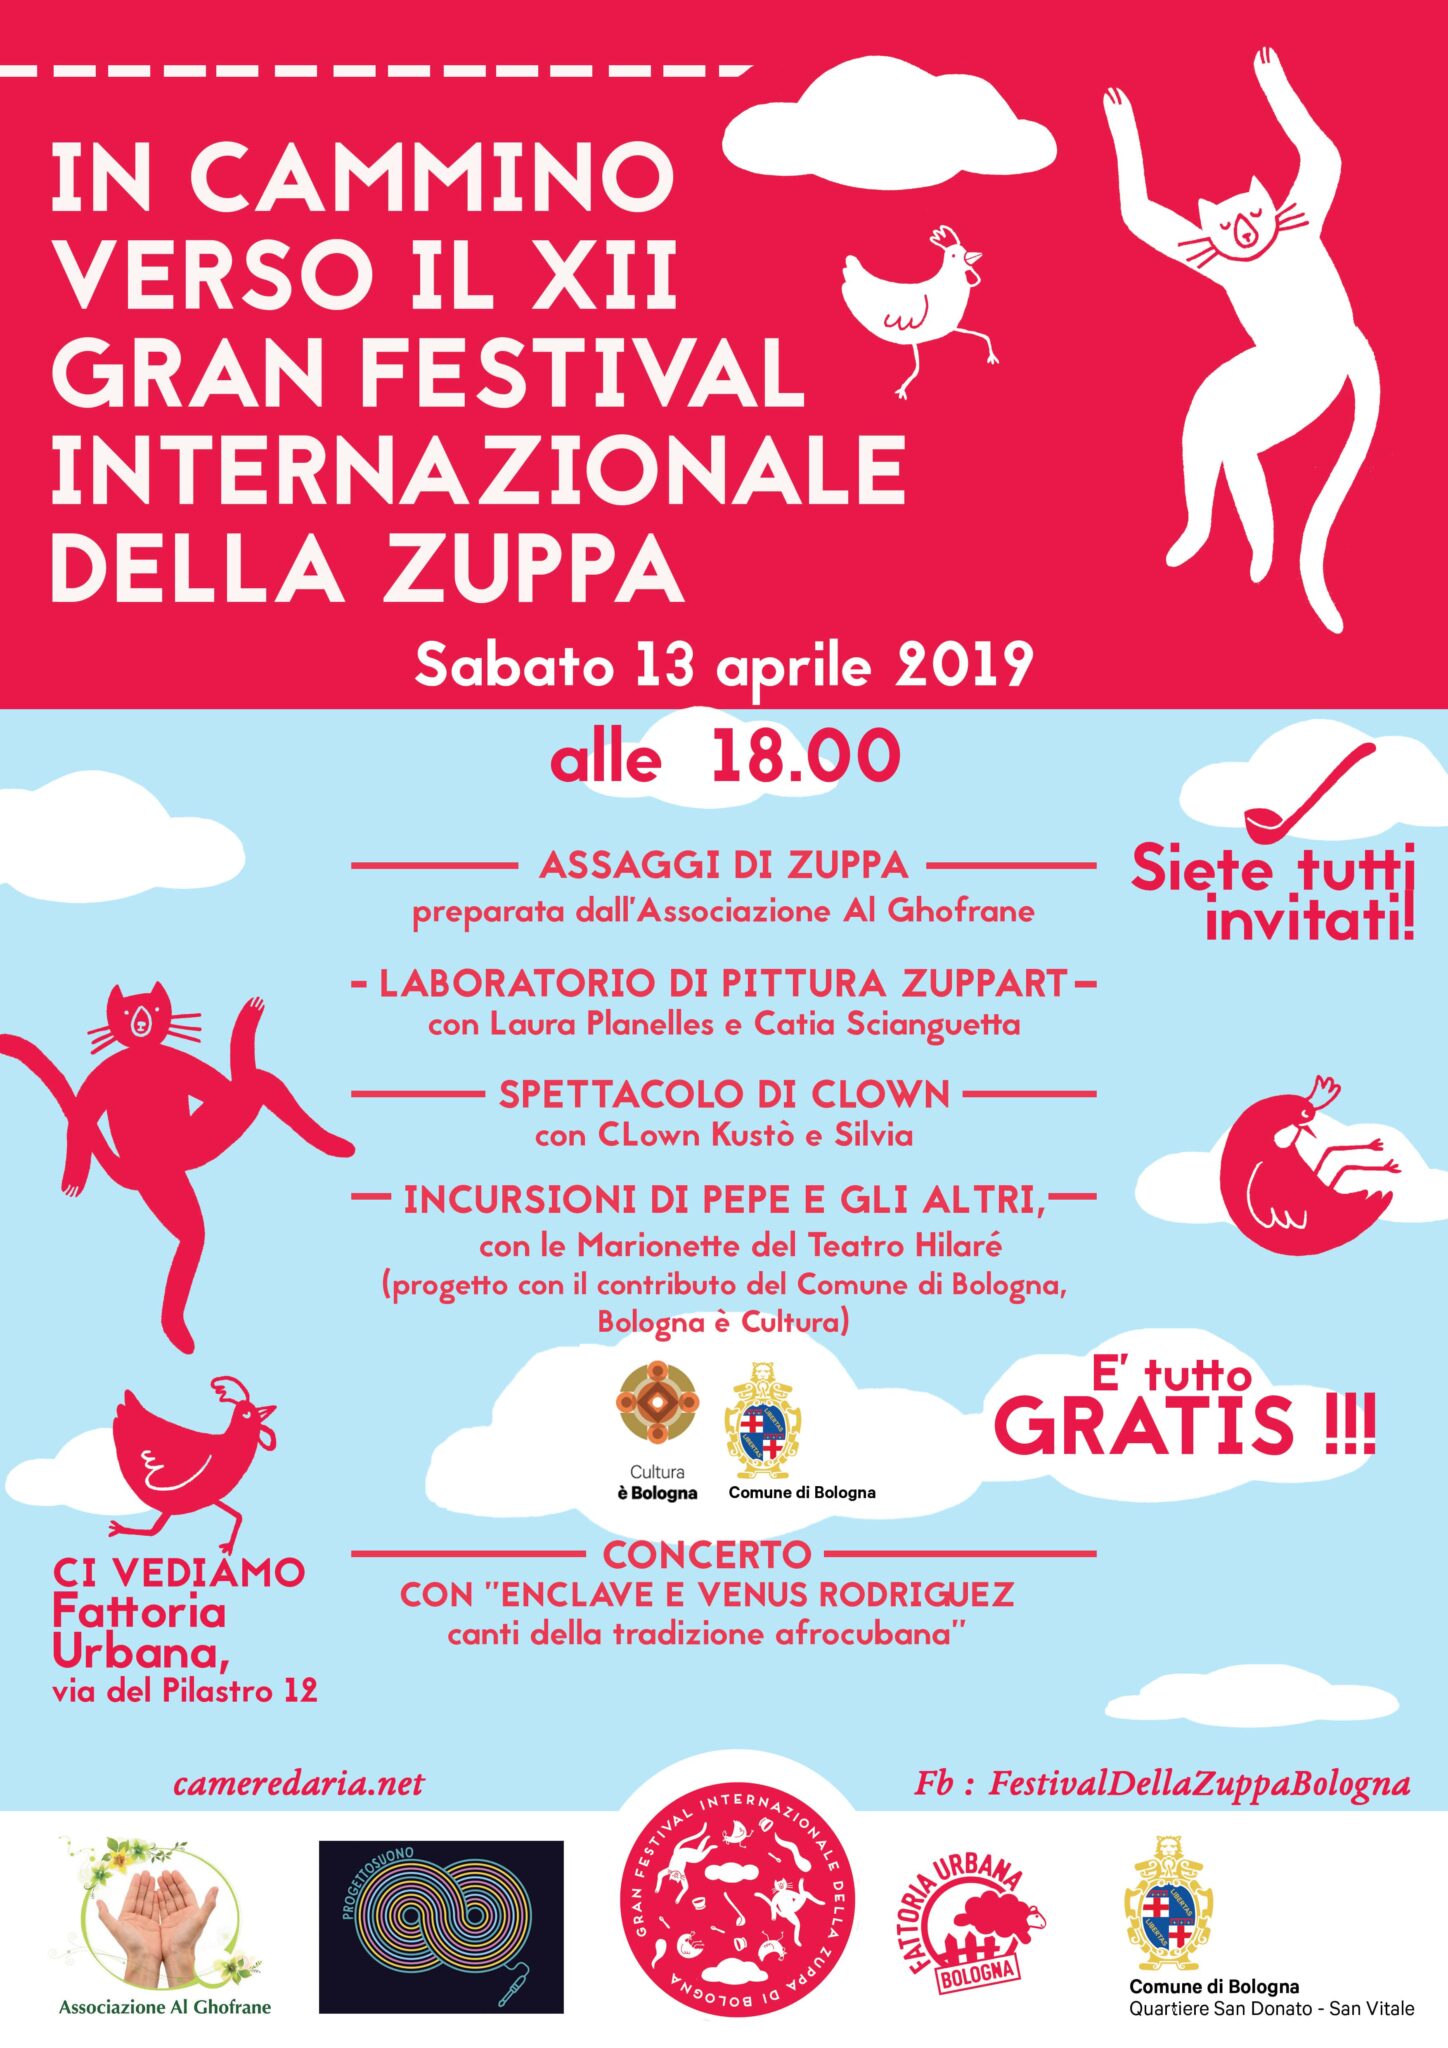 You are currently viewing In Cammino verso il XII Gran Festival Internazionale della Zuppa